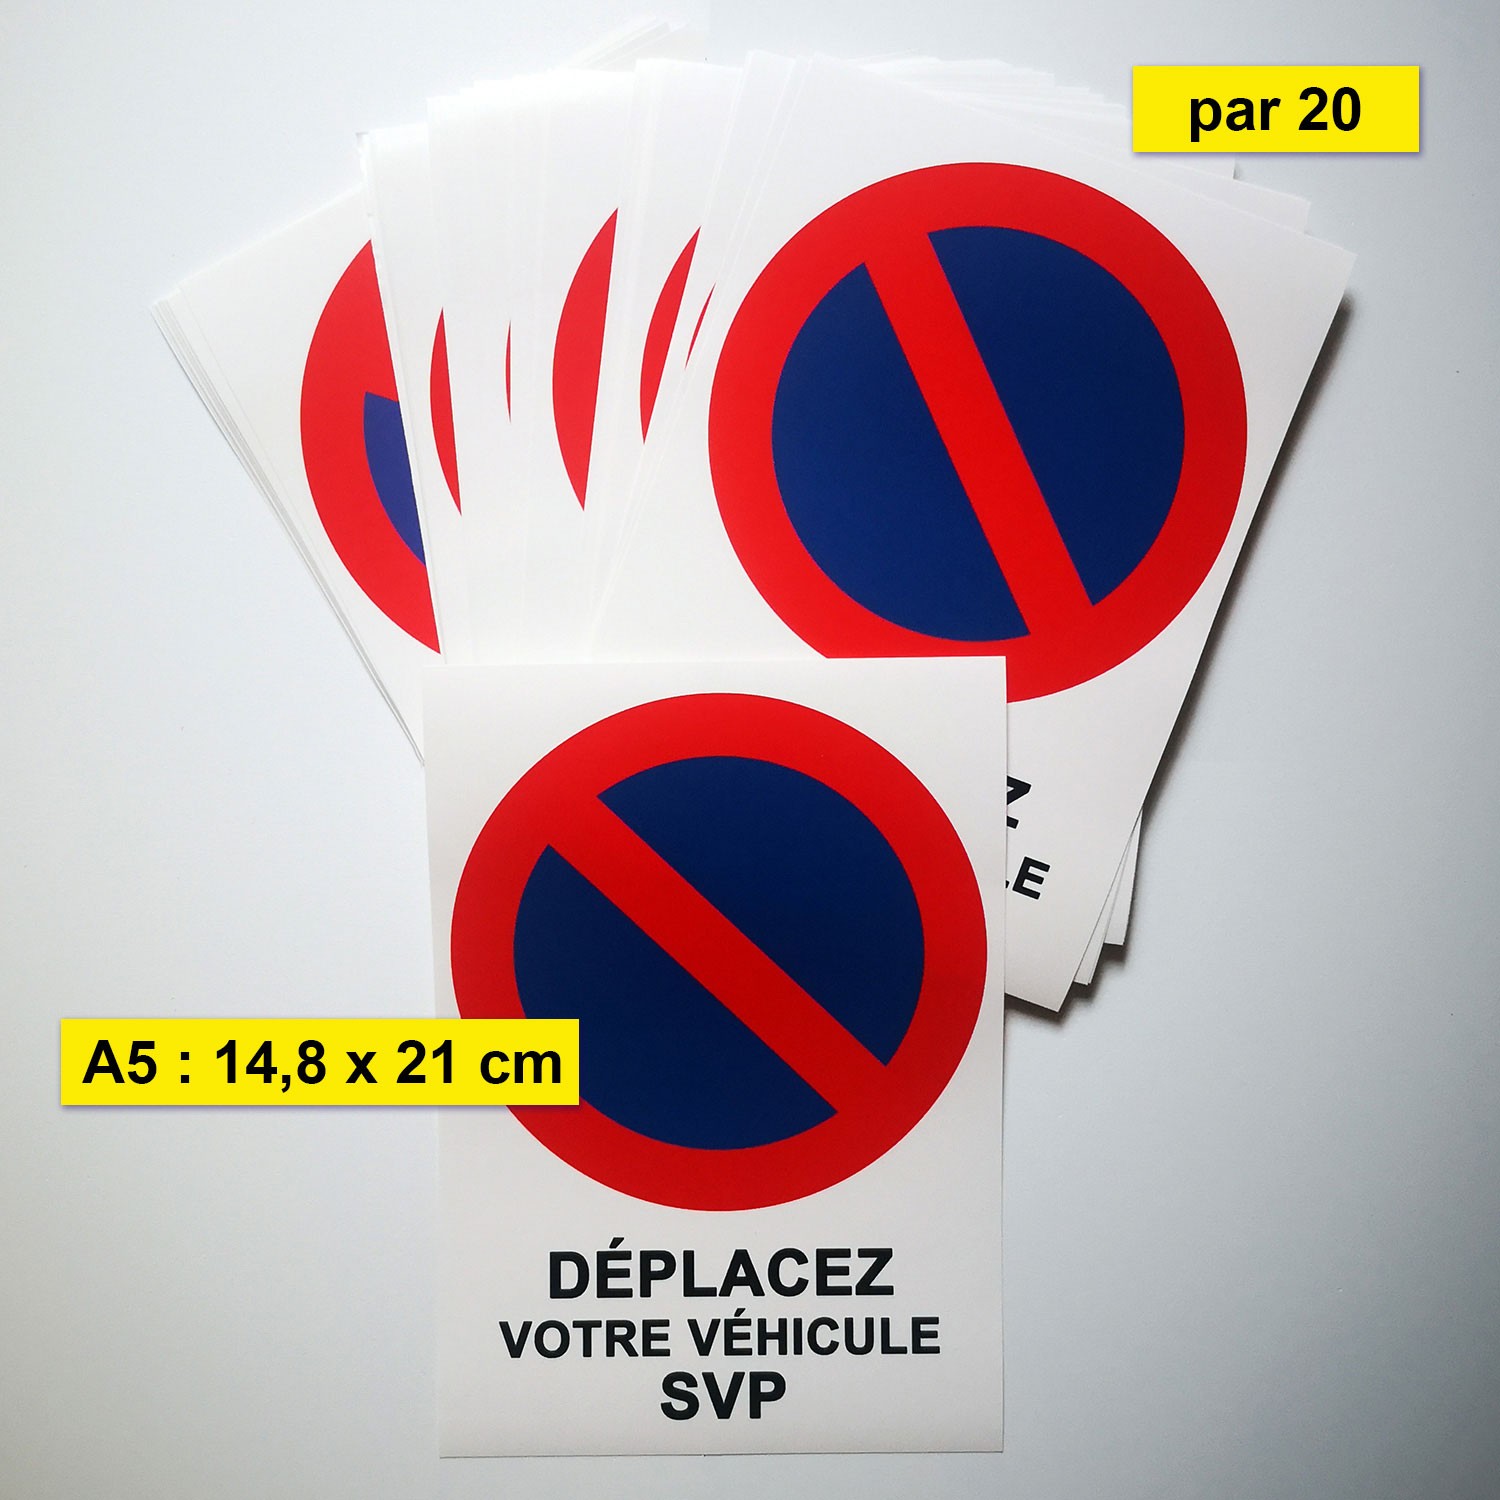 30 étiquettes STATIONNEMENT GENANT pour véhicule mal garé - Format 50 x 100  mm - Stickers autocollant : : Auto et Moto